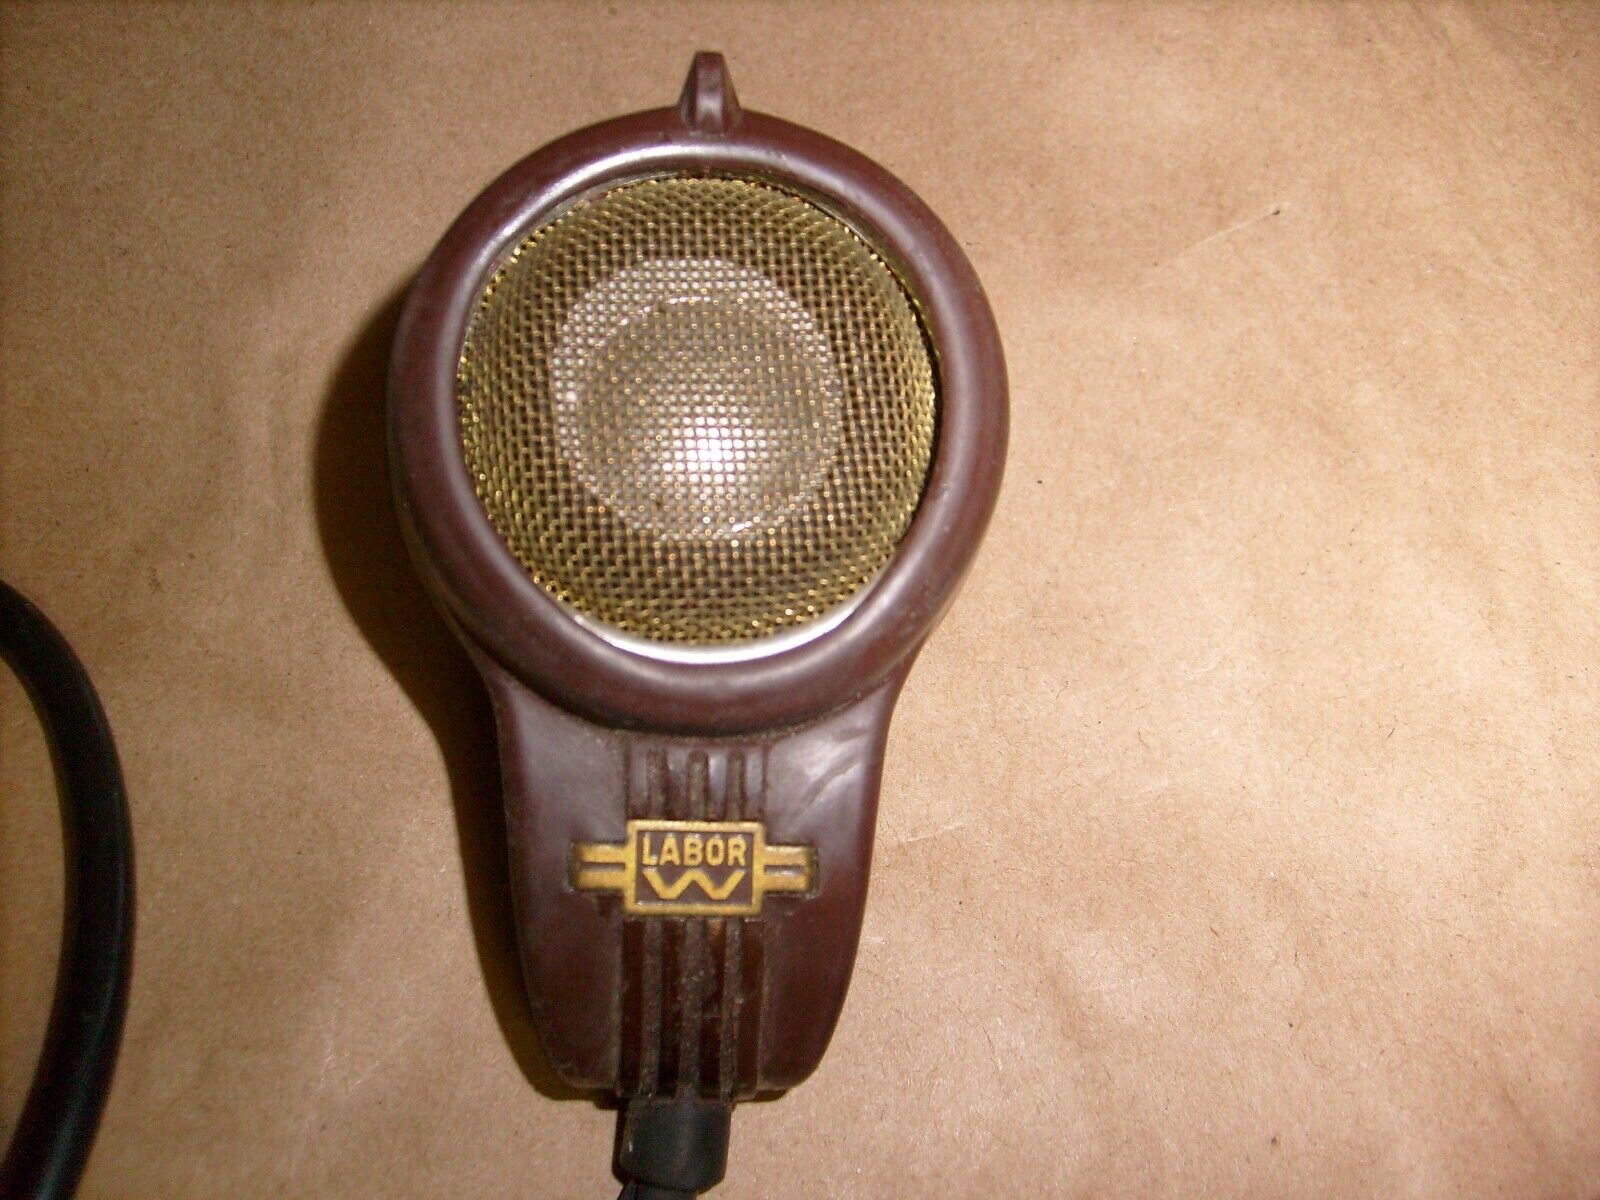 Vintage Sennheiser Laboratory LABOR W MD 7 H Dynamic Microphone